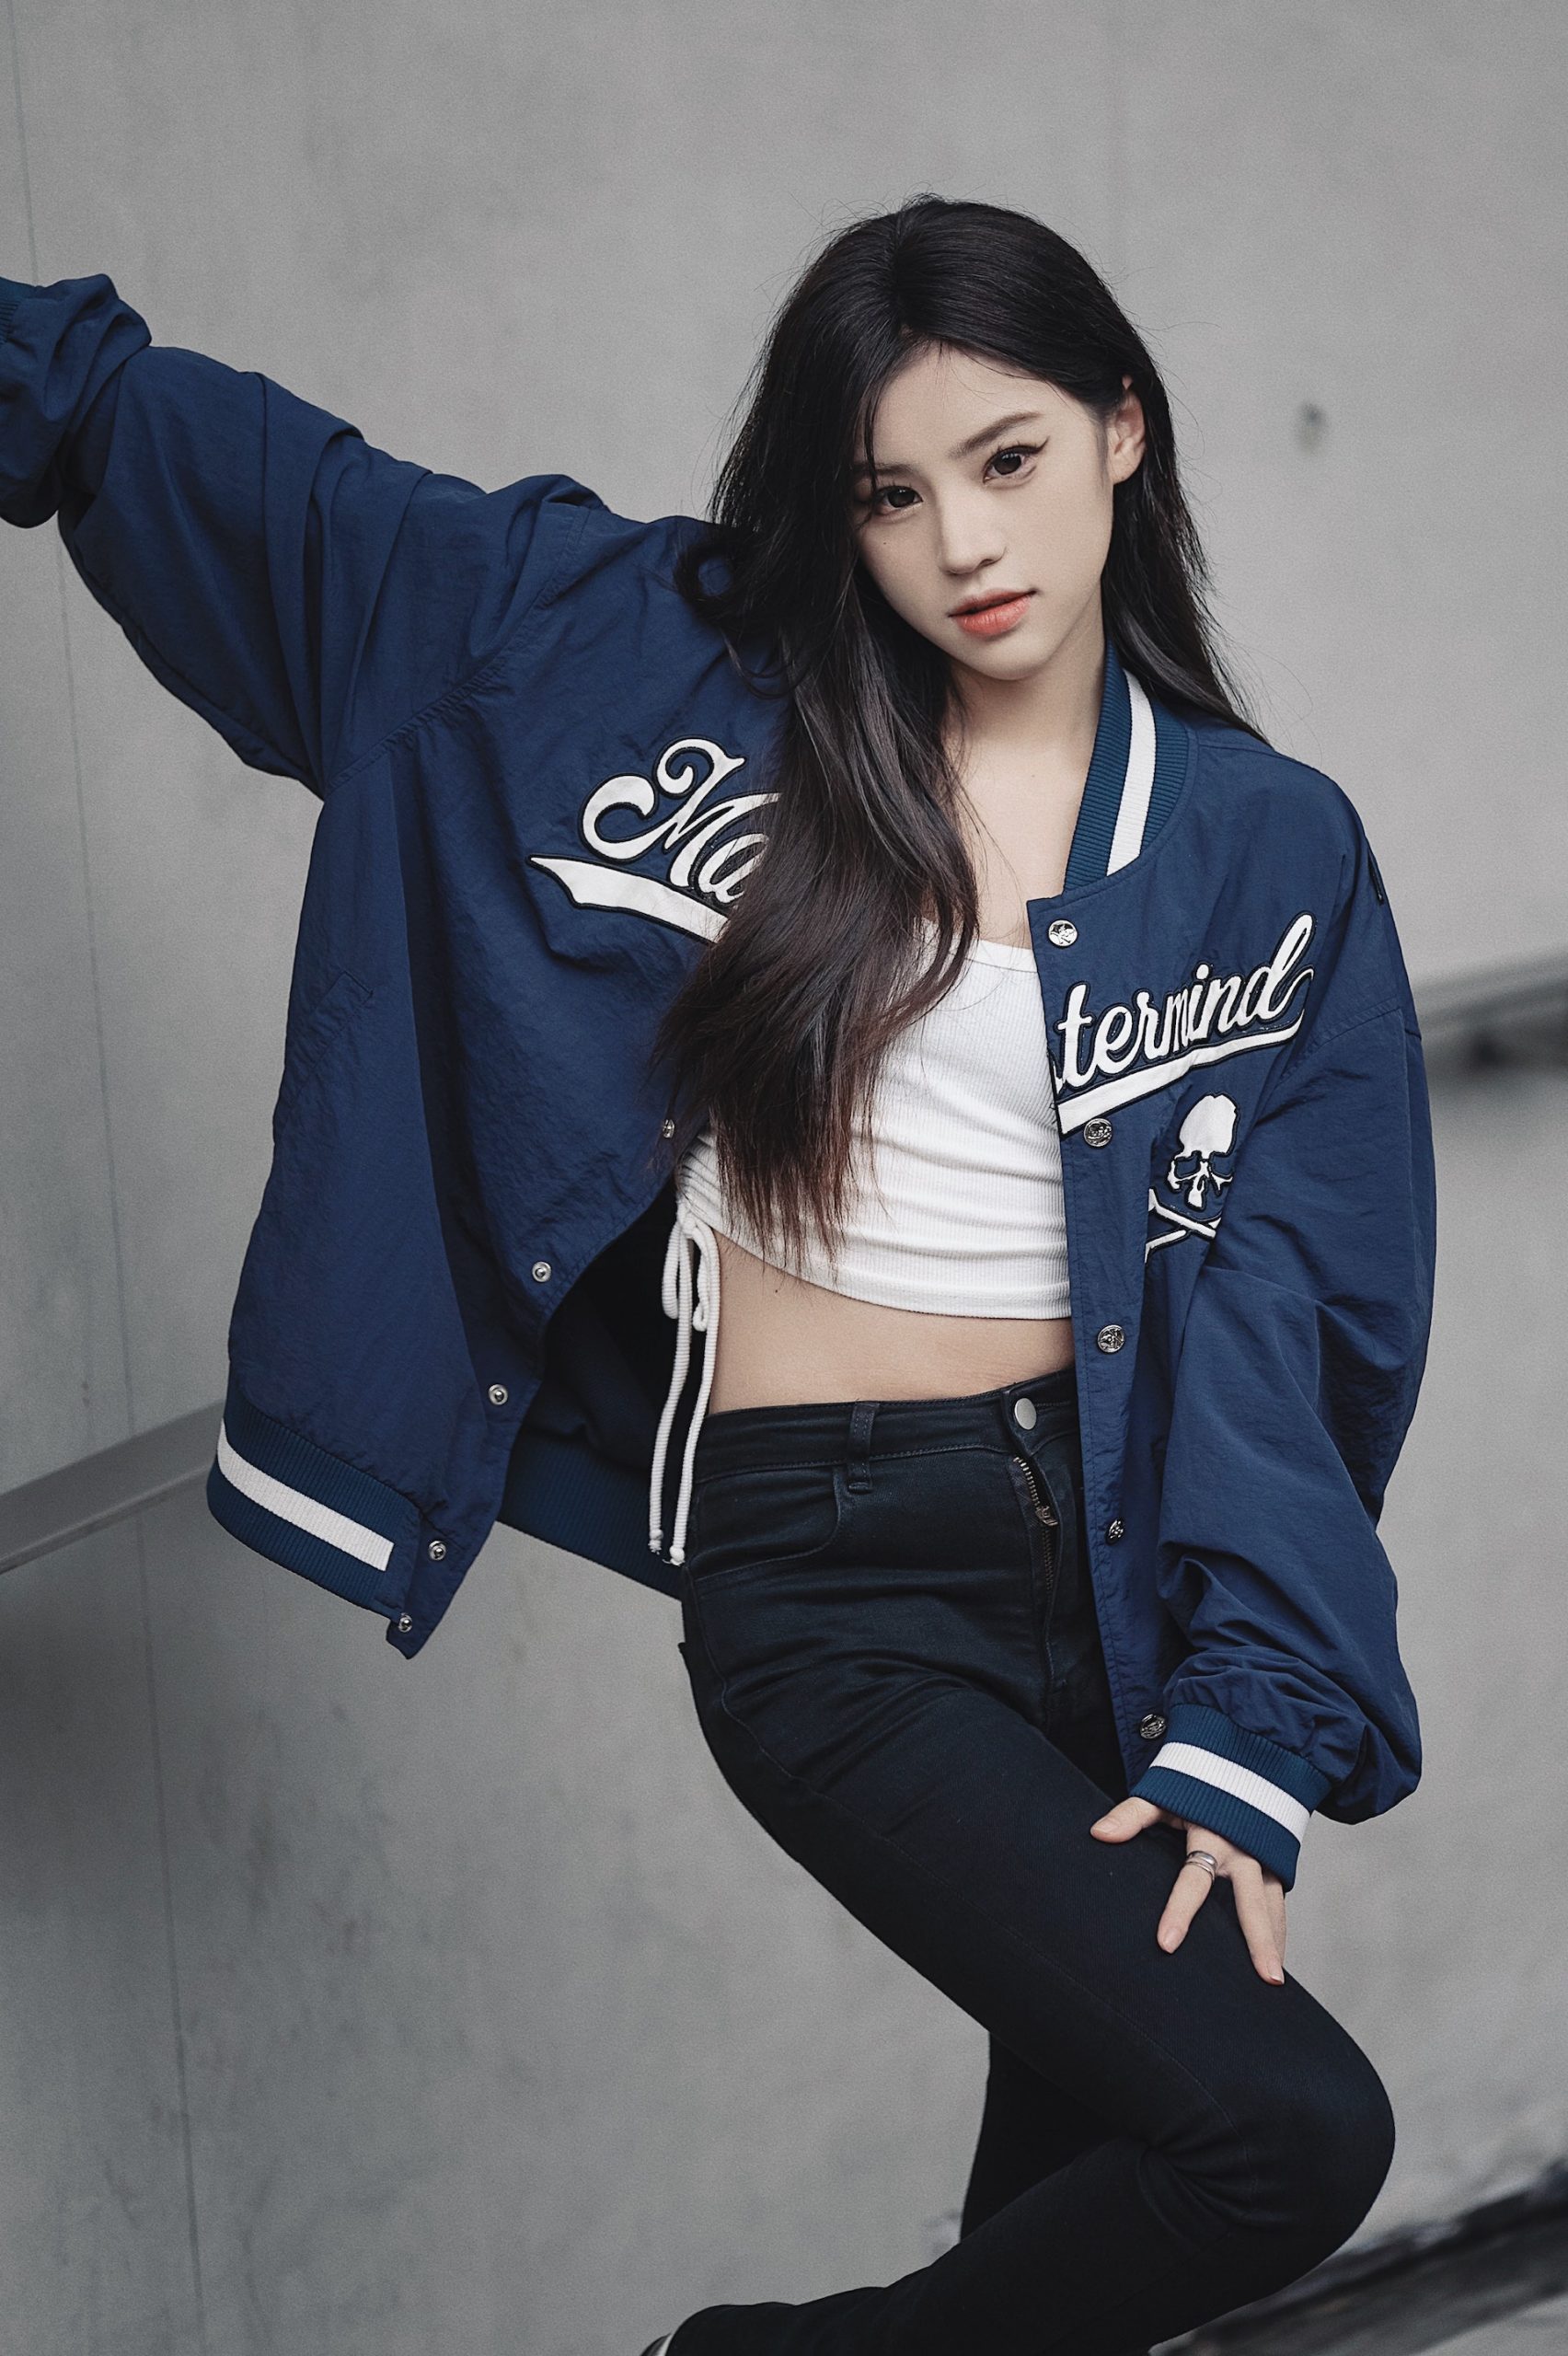 kpop model wearing a jacket